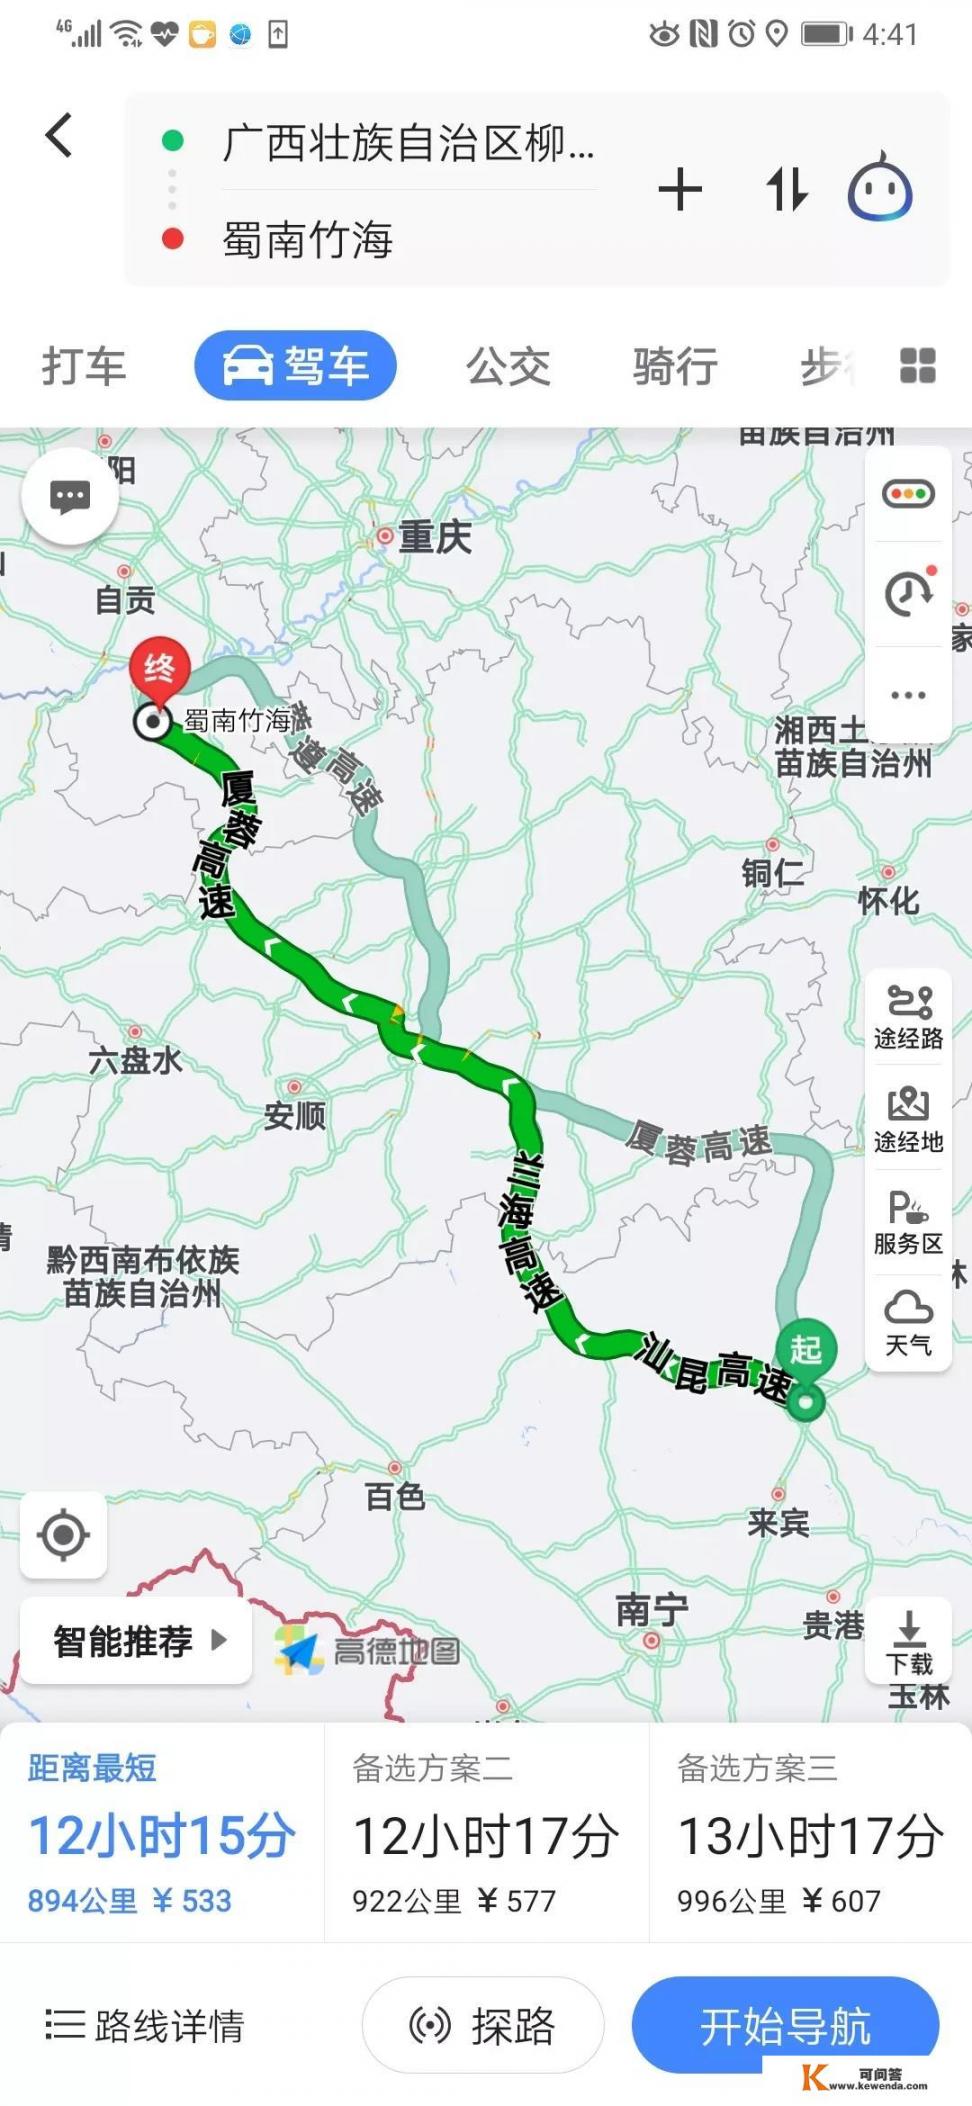 2019年8月初4人自驾柳州到四川，如何规划七八天的行程？求路线或攻略，谢谢